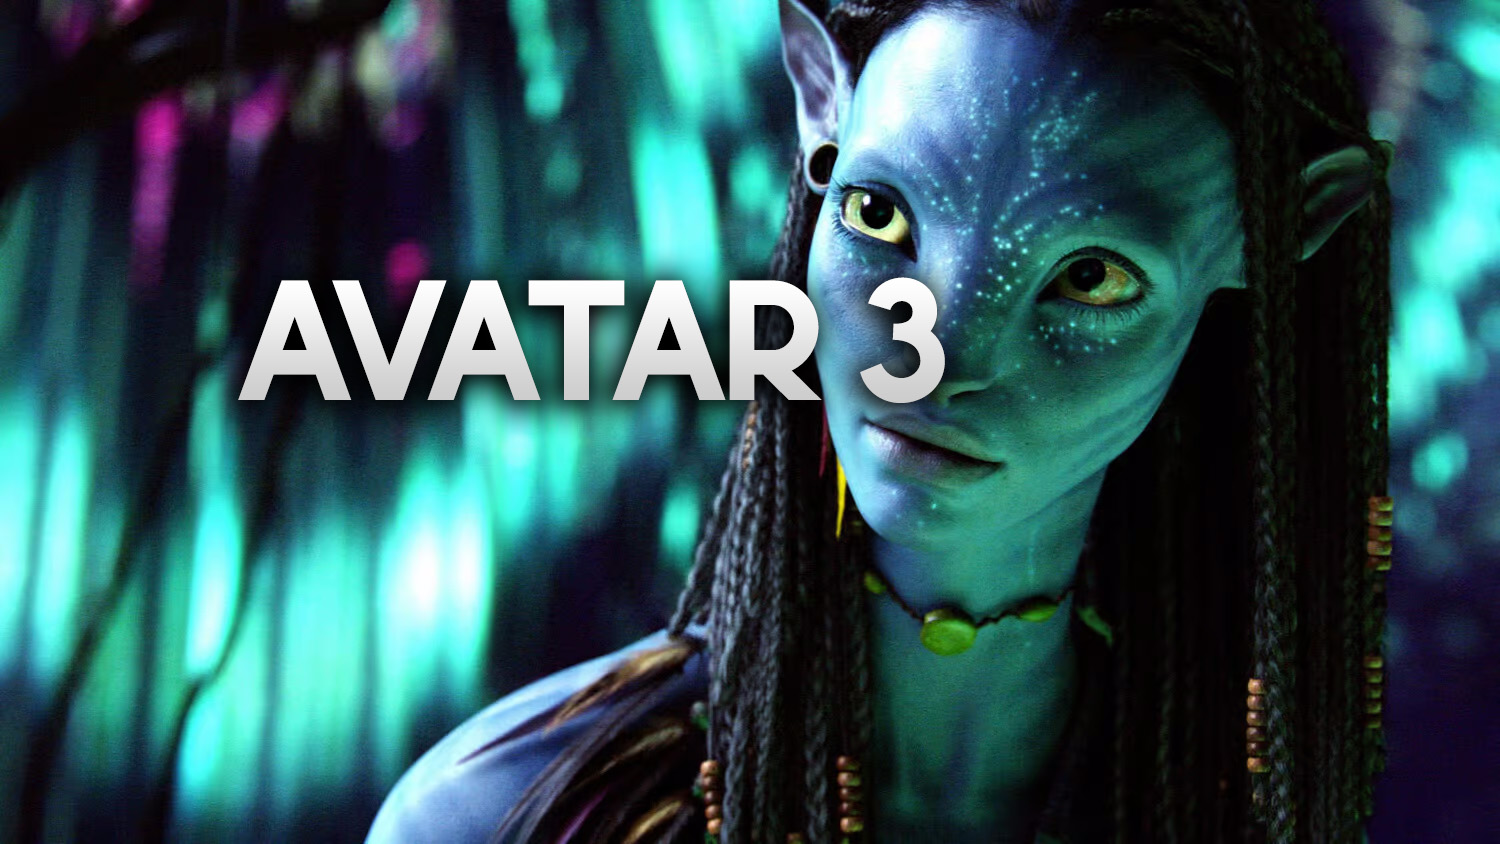 Są nowe informacje o przesuniętym filmie “Avatar 3”! Kiedy kolejna część w kinach?